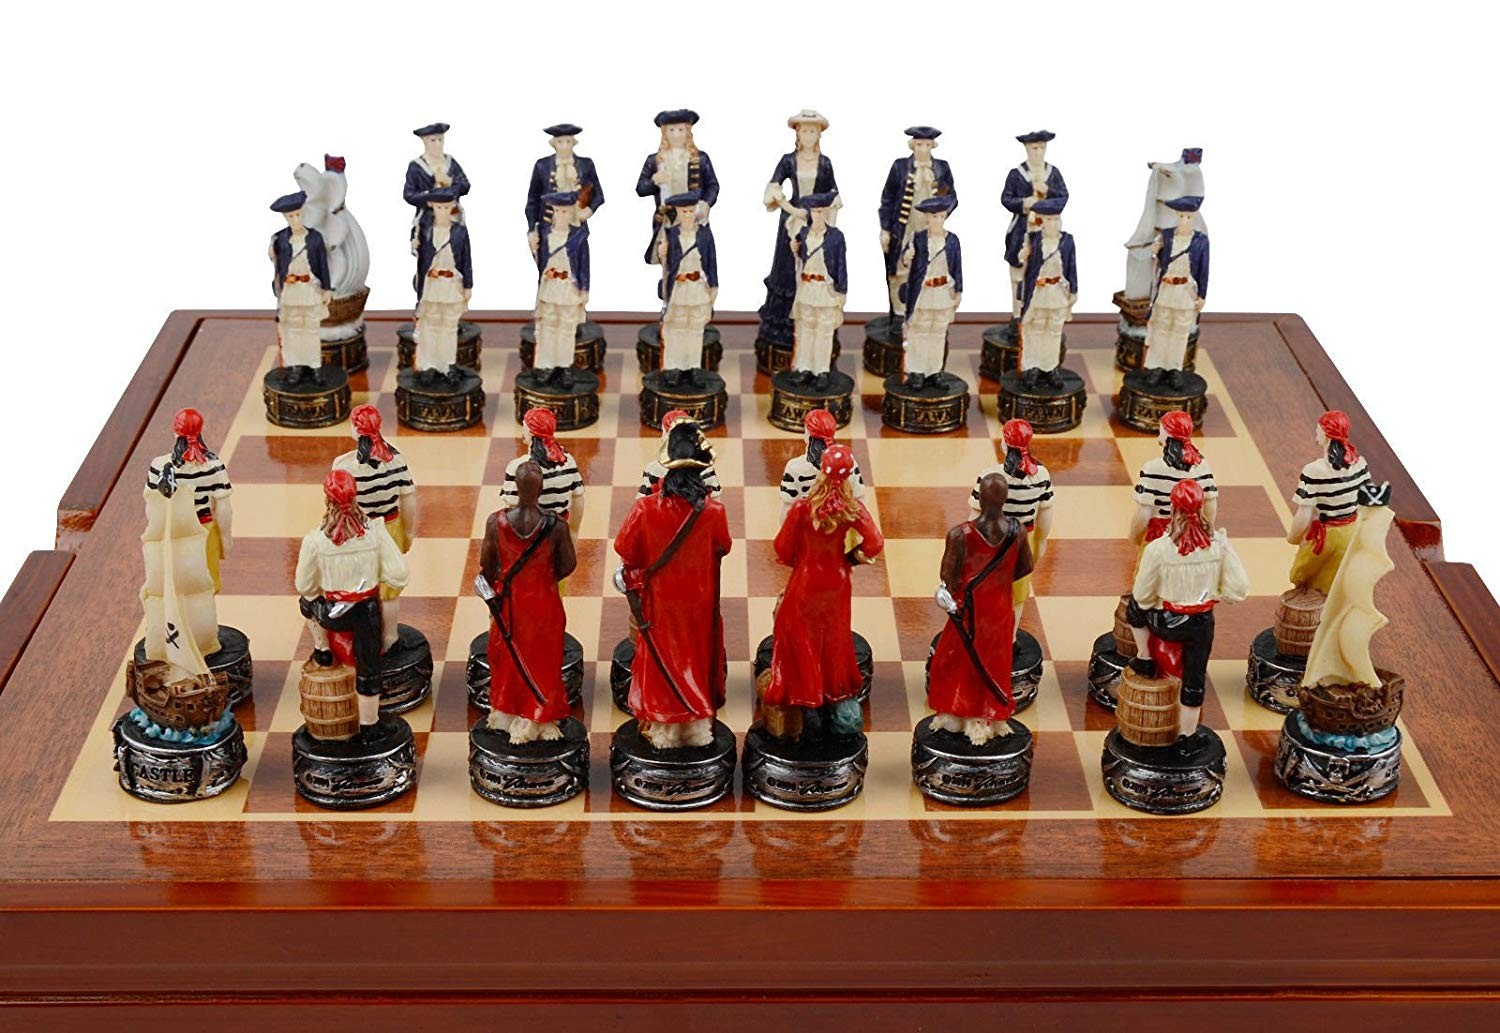 travel chess set argos